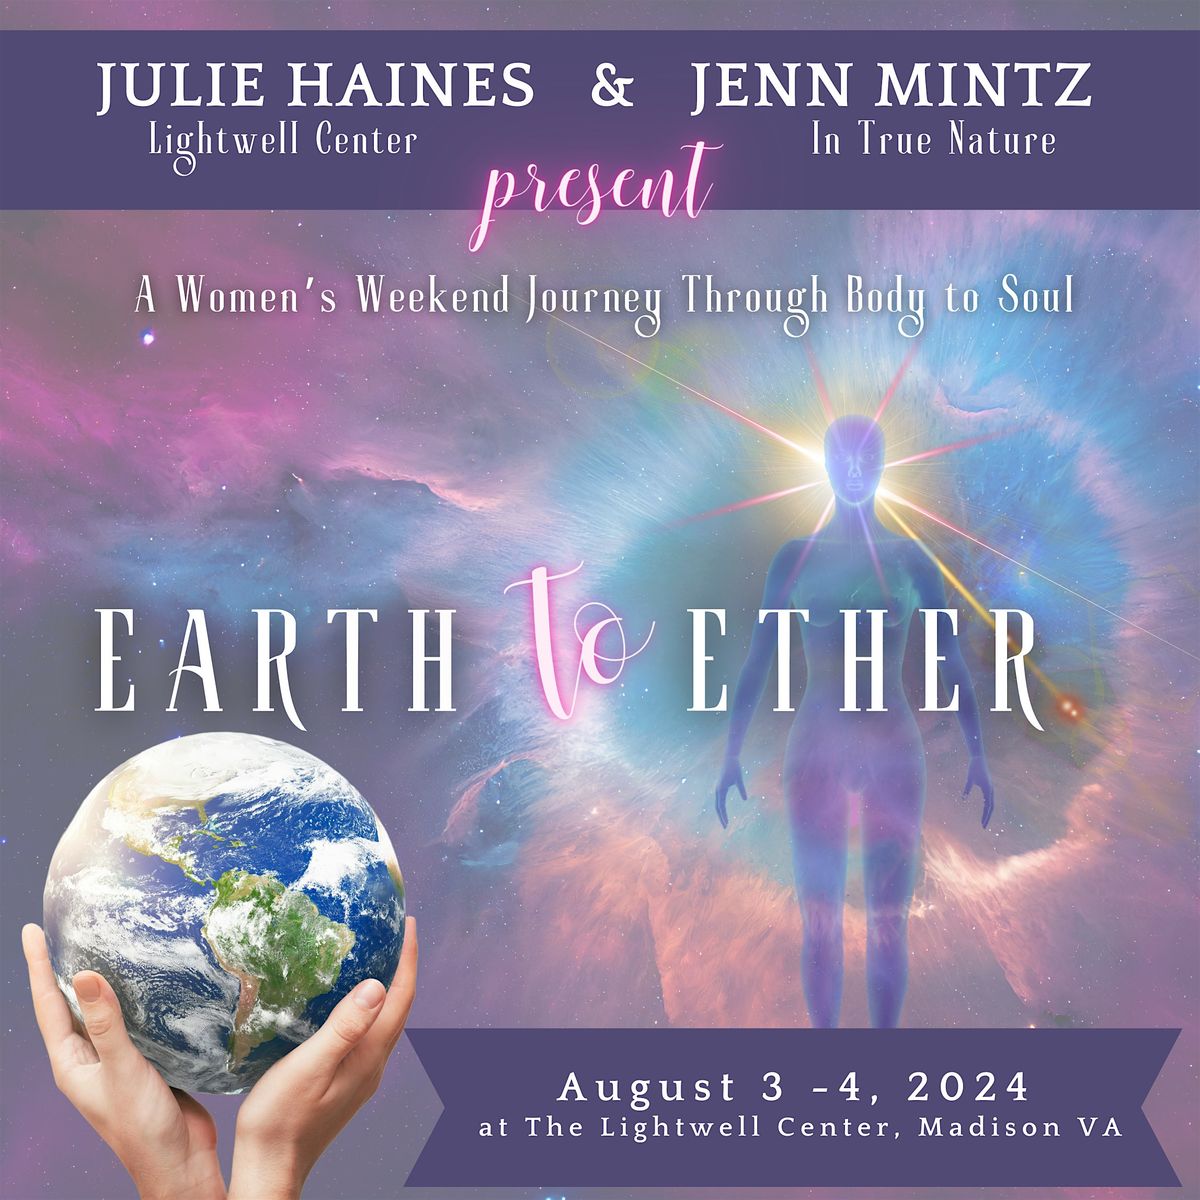 EARTH TO ETHER WOMEN\u2019S WEEKEND JOURNEY BY JULIE HAINES & JENN MINTZ